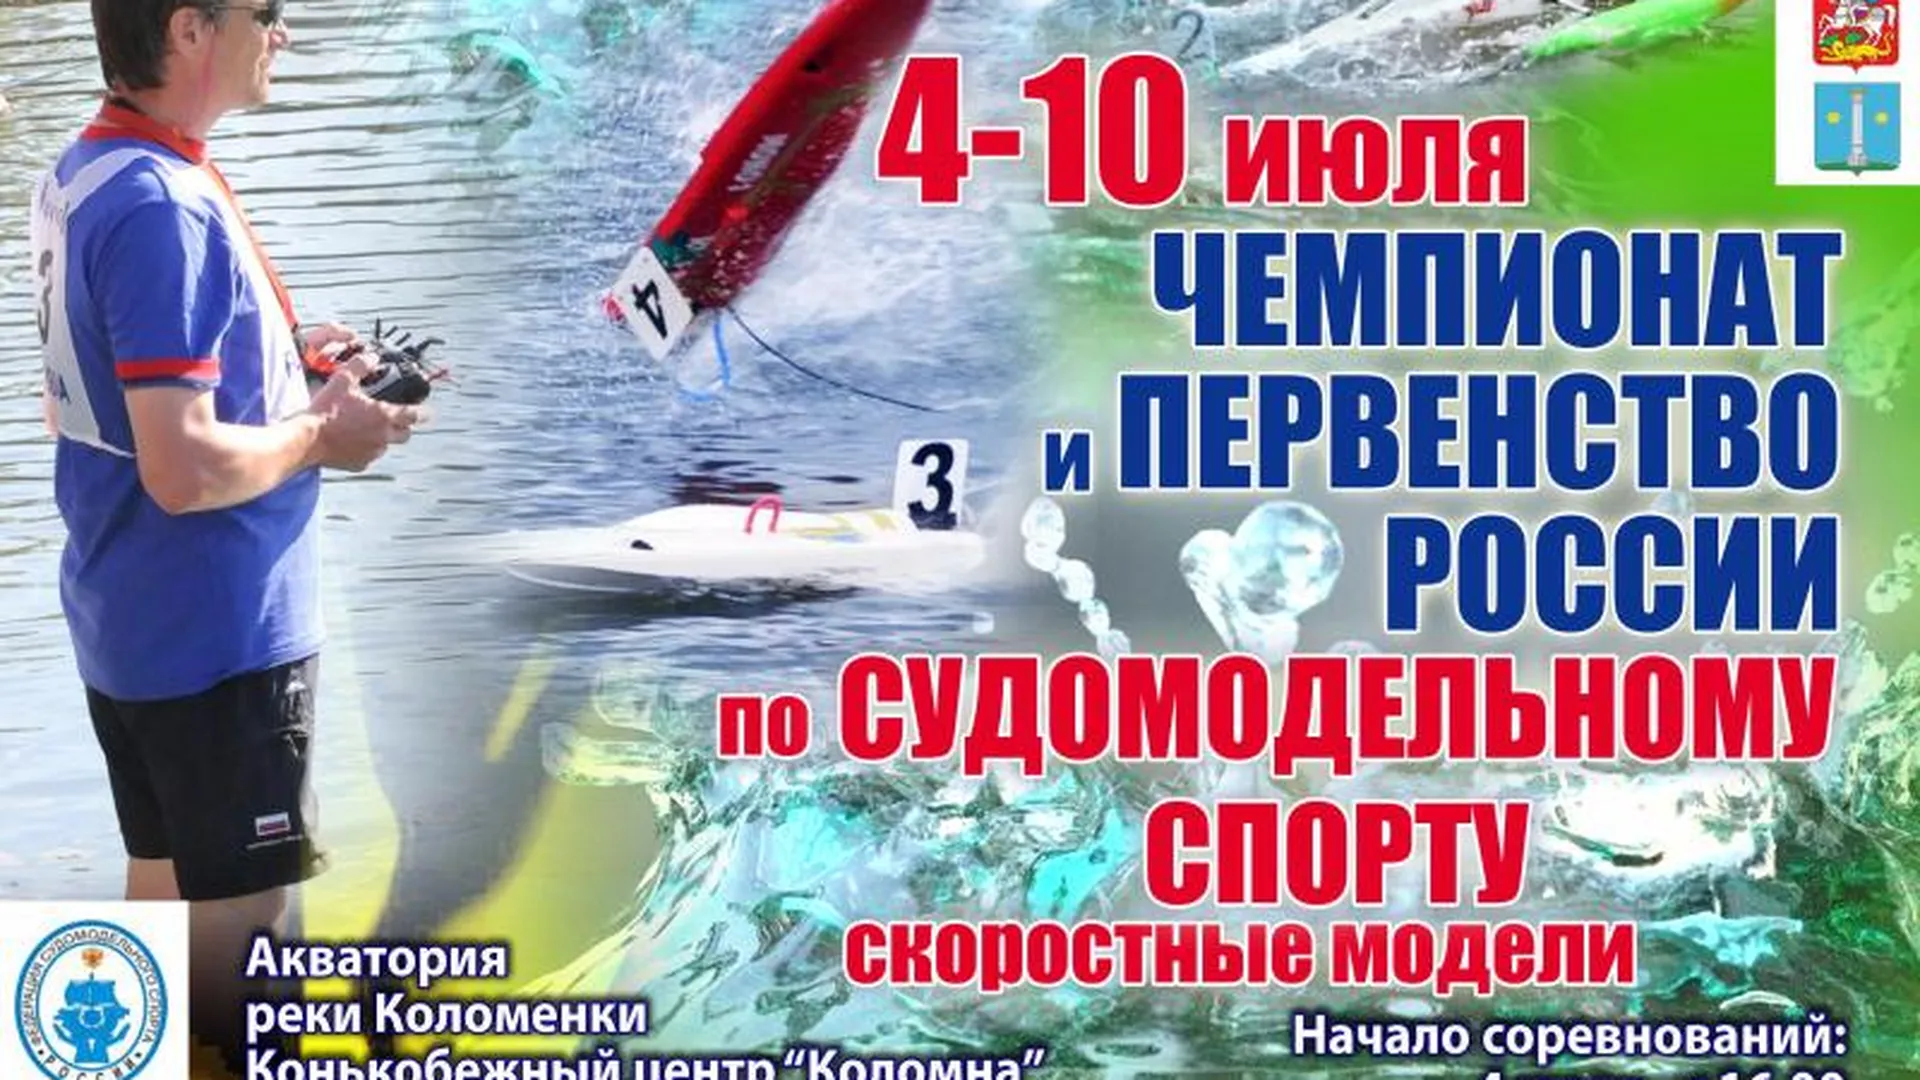 Состязания по судомодельному спорту пройдут на реке Коломенка в июле